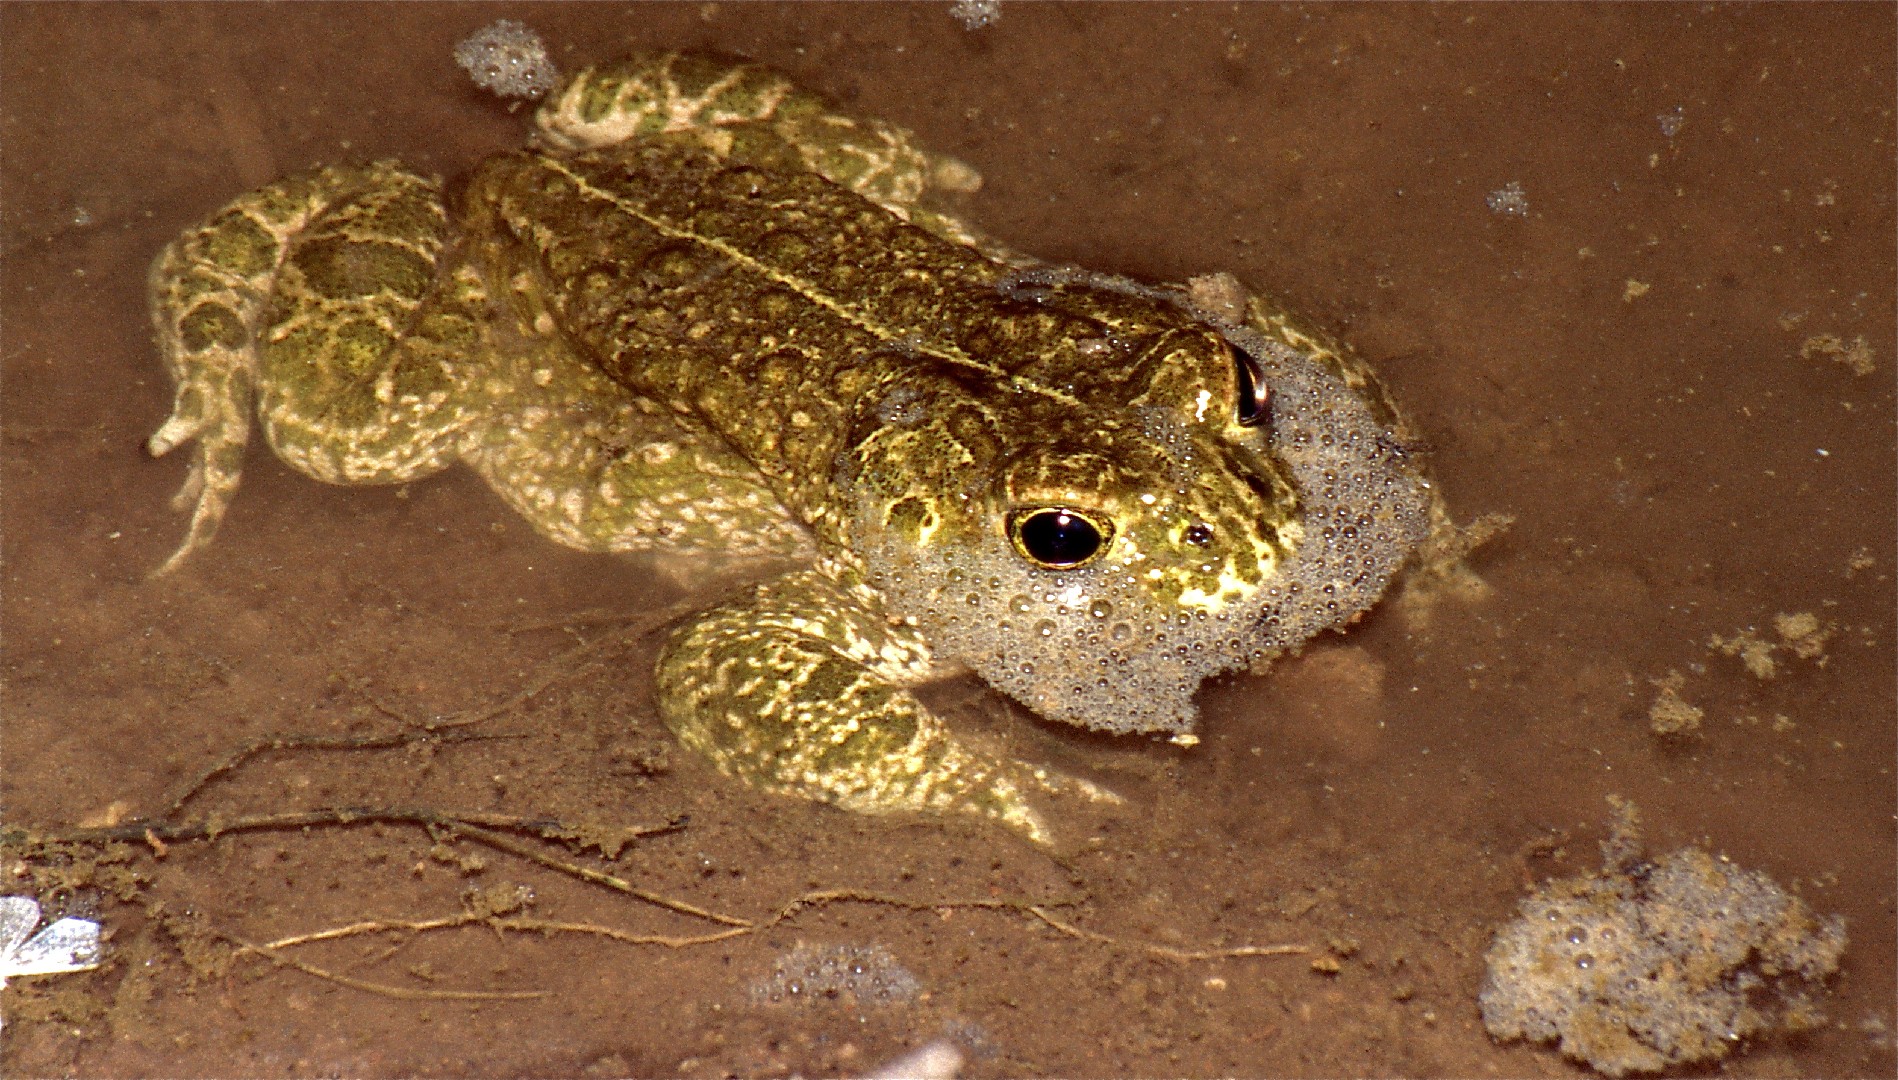 Natterjack toad (Epidalea)